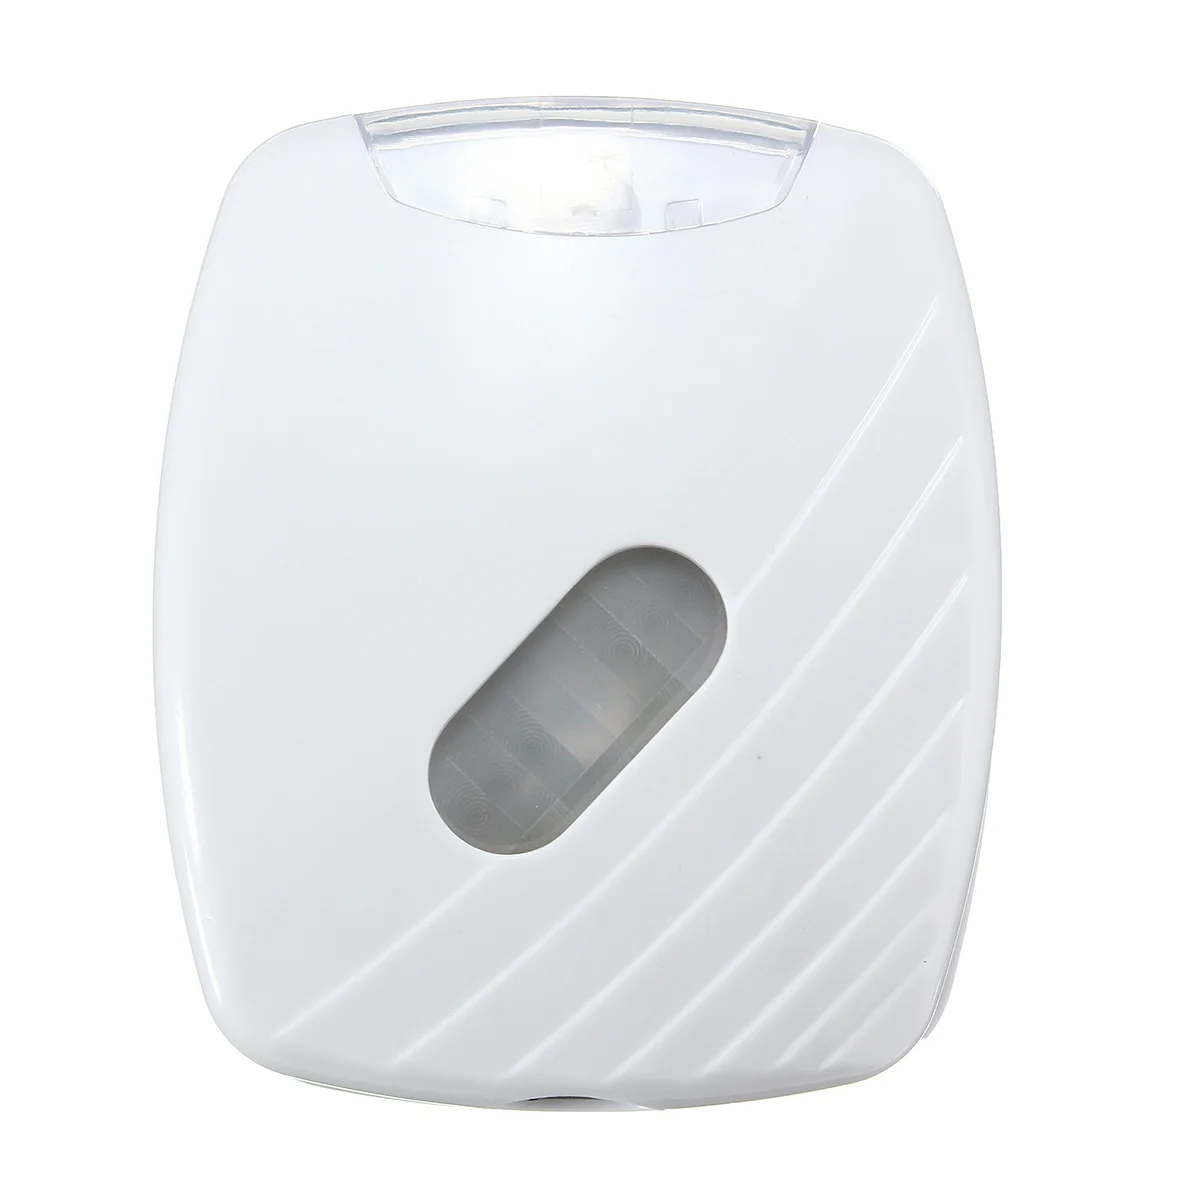 Jiguoor Новое поступление светодиодный активированный движения человека PIR светильник с датчиком для туалета светодиодный легкая миска для ванной светодиодный ночной активированный светильник движения